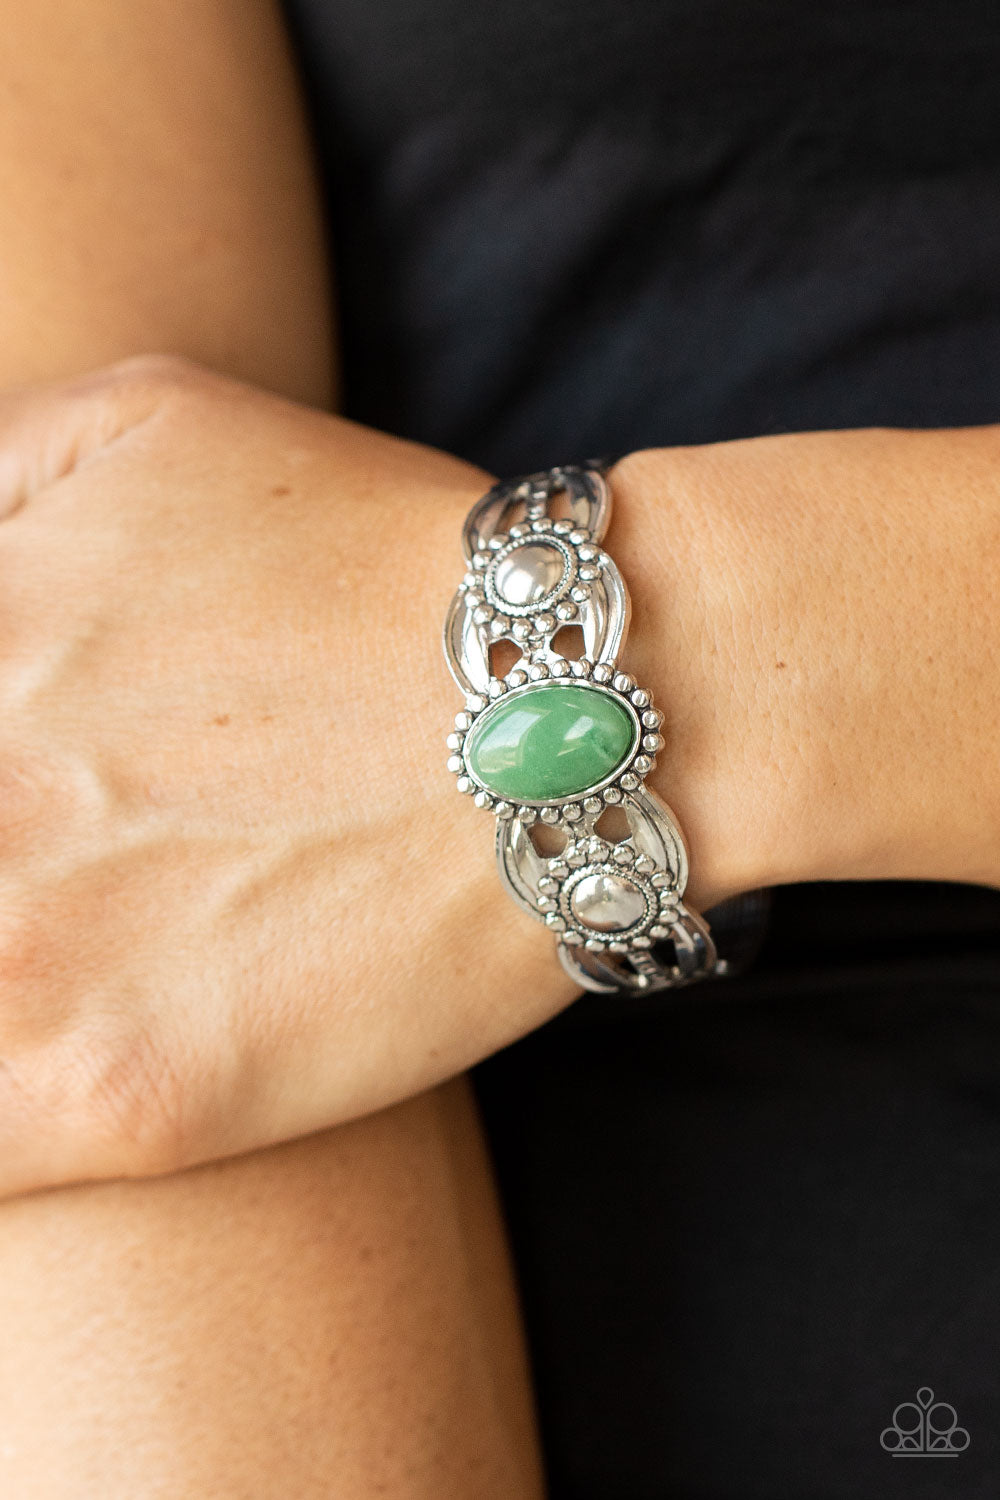 Sage green bracelet